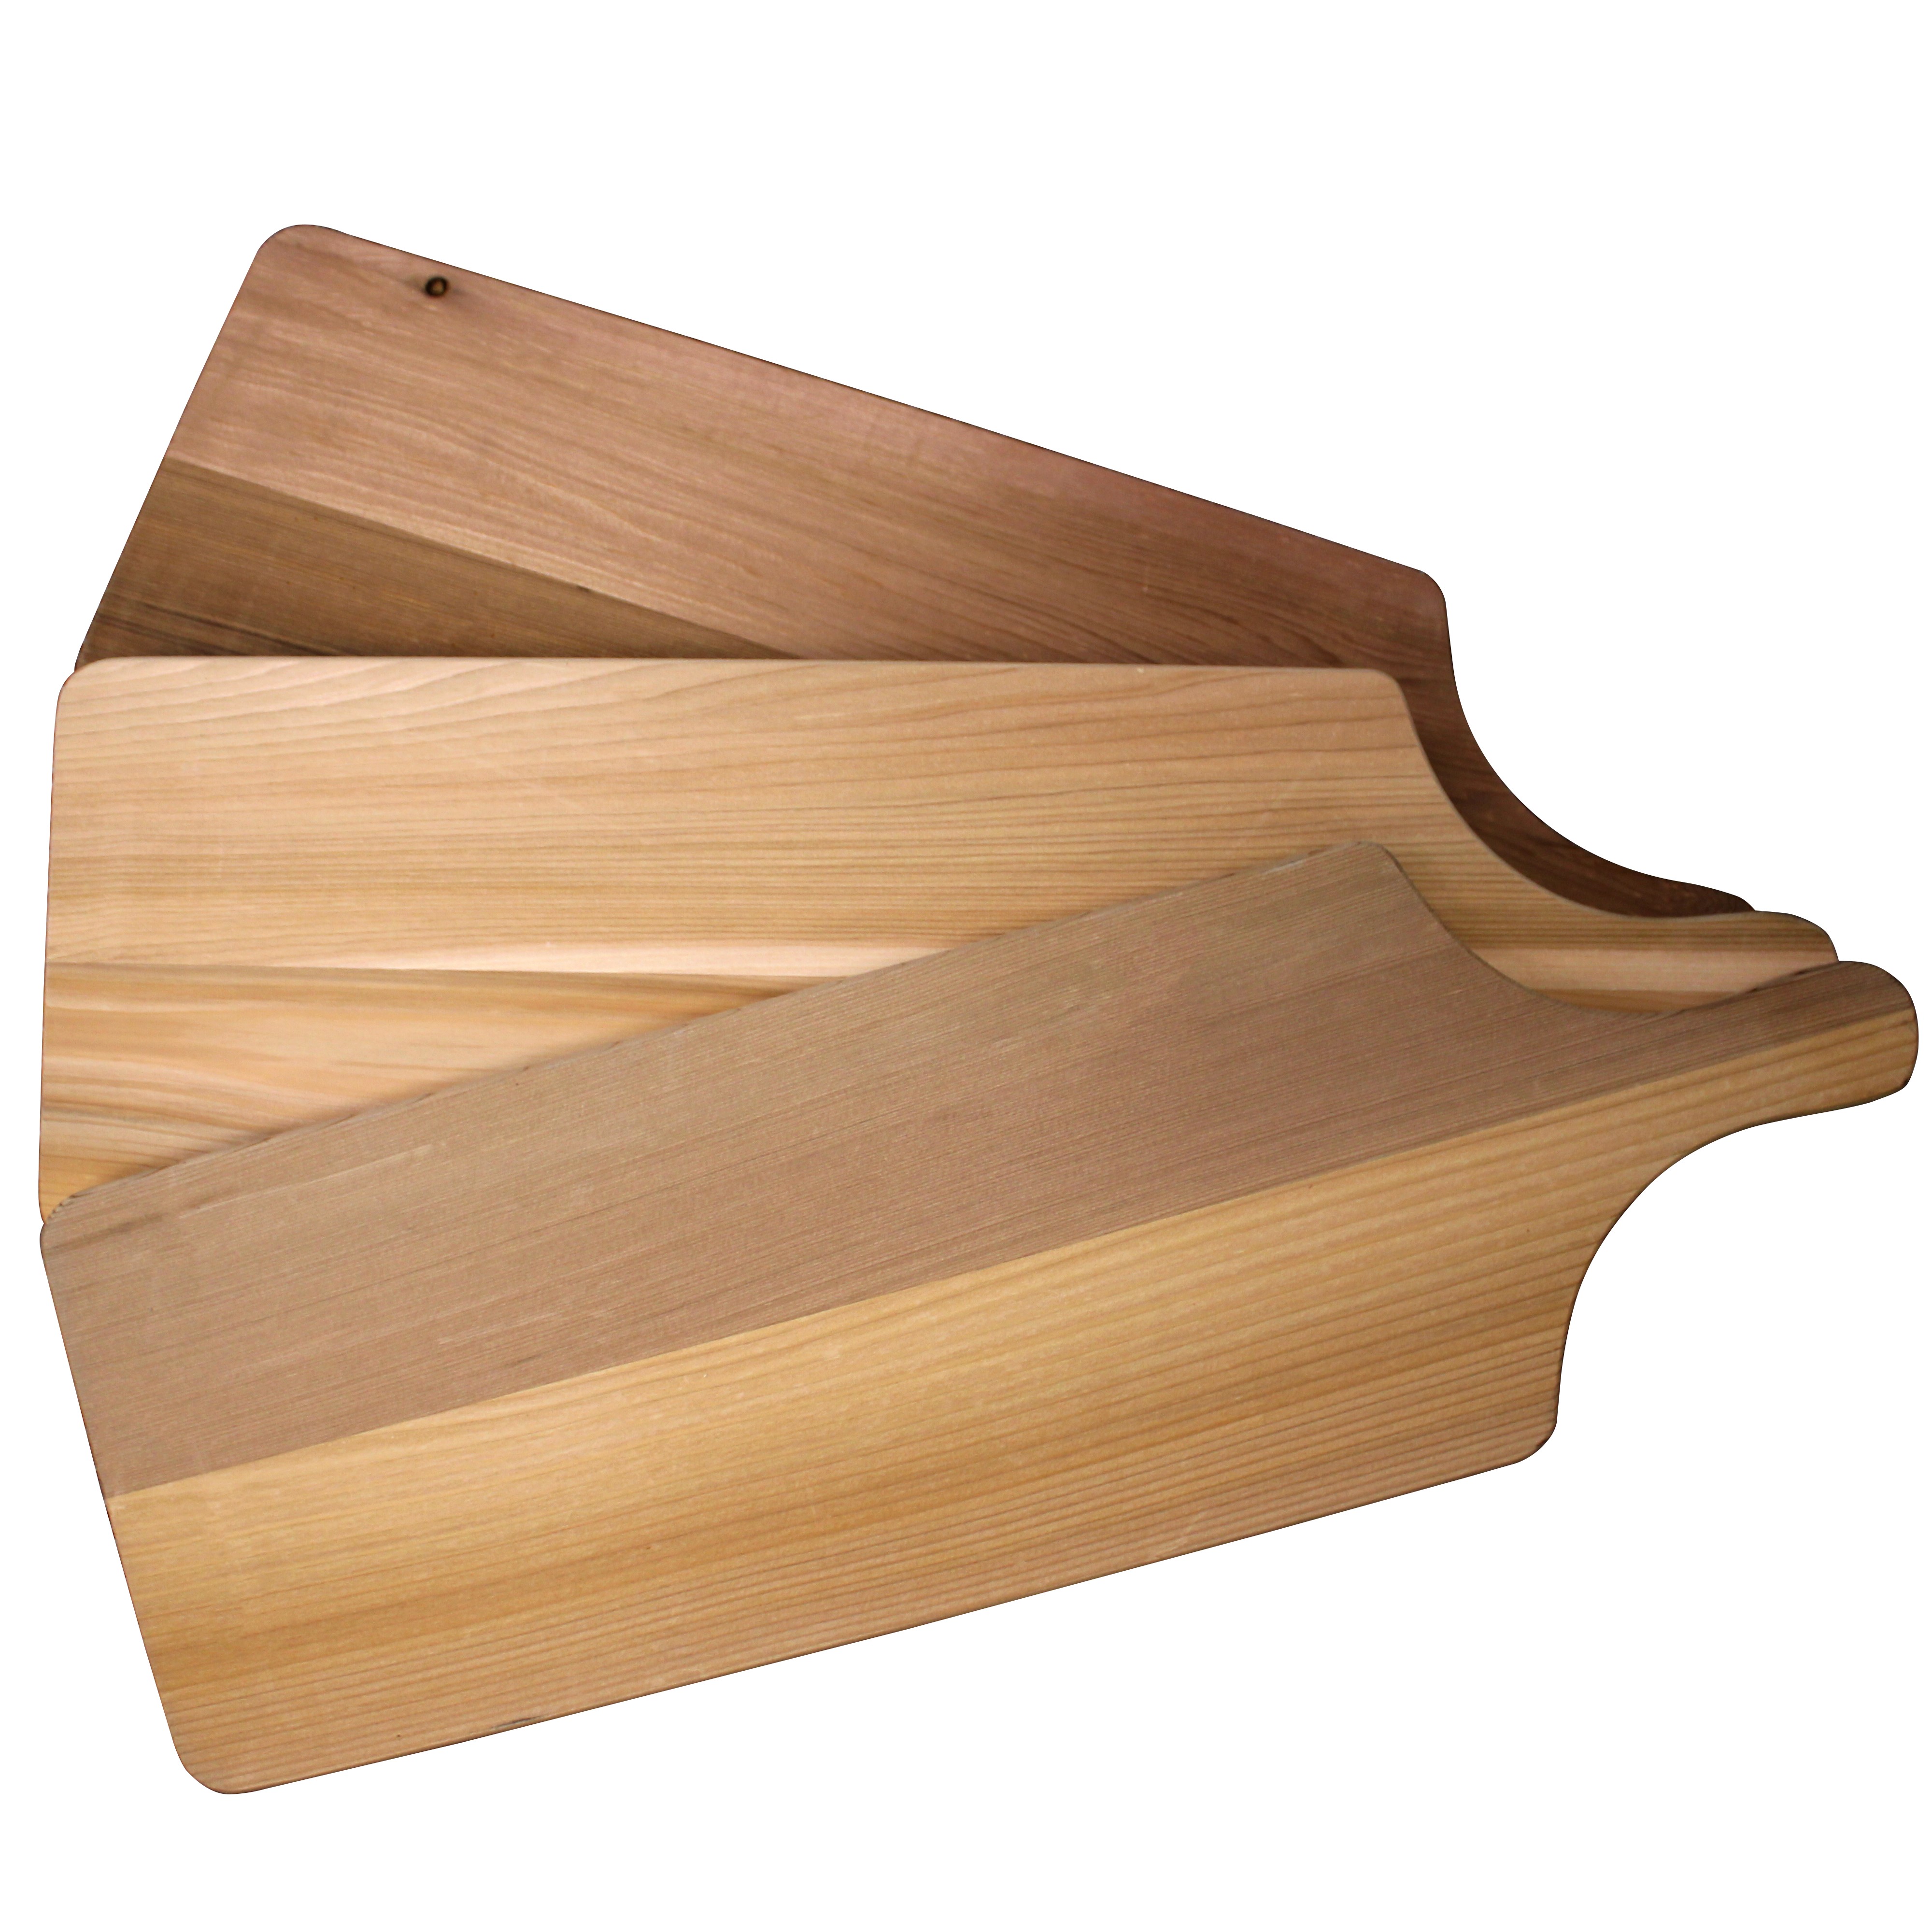 Handcrafted Cedar Cutting/Serving Board - Large - 100% Western Red Cedar